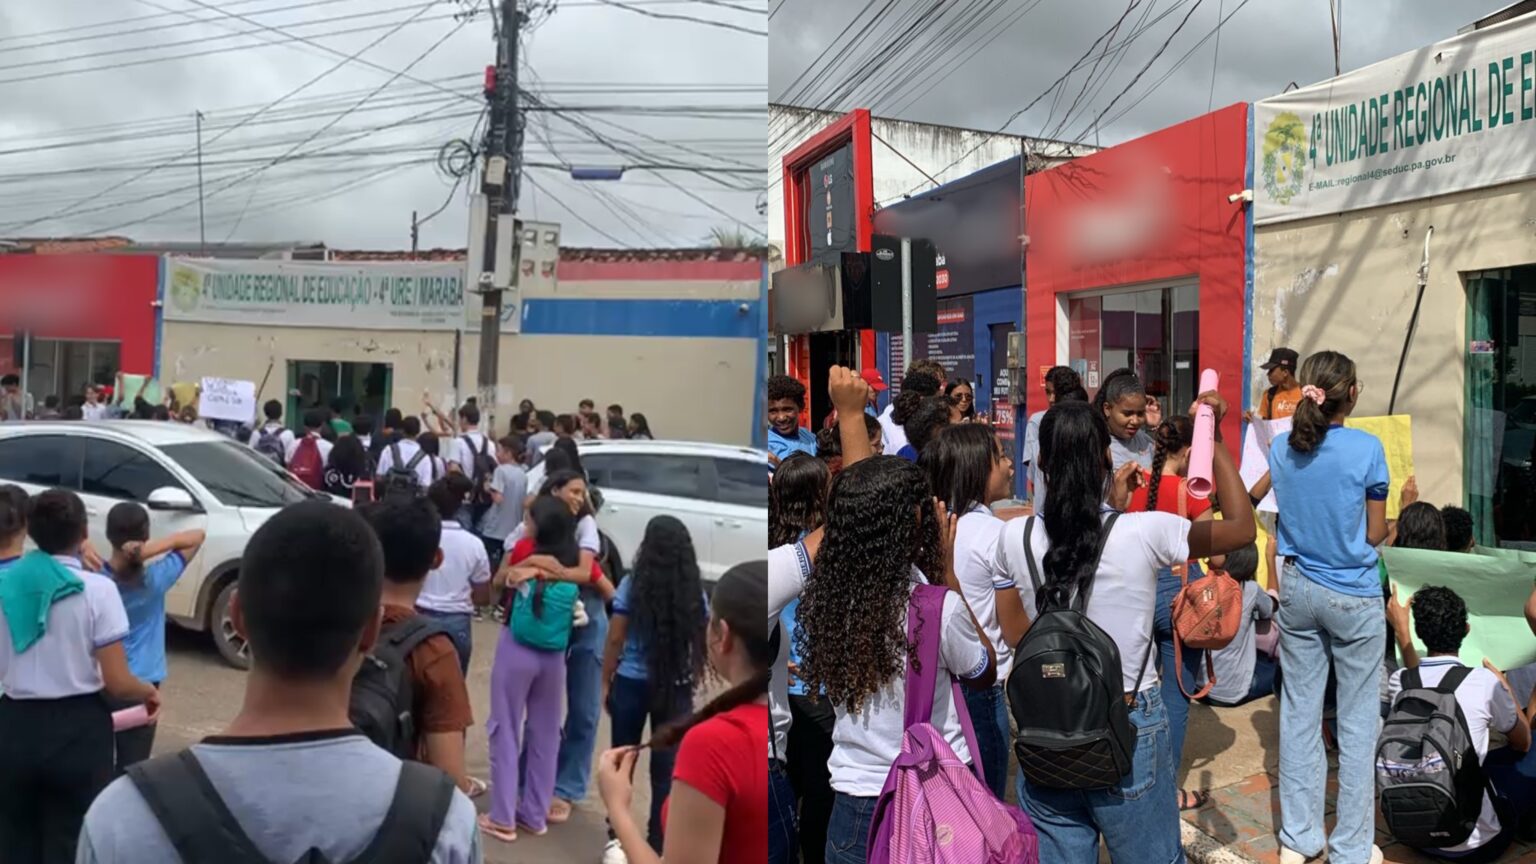 VÍDEO: Alunos protestam contra descaso na educação pública estadual em Marabá